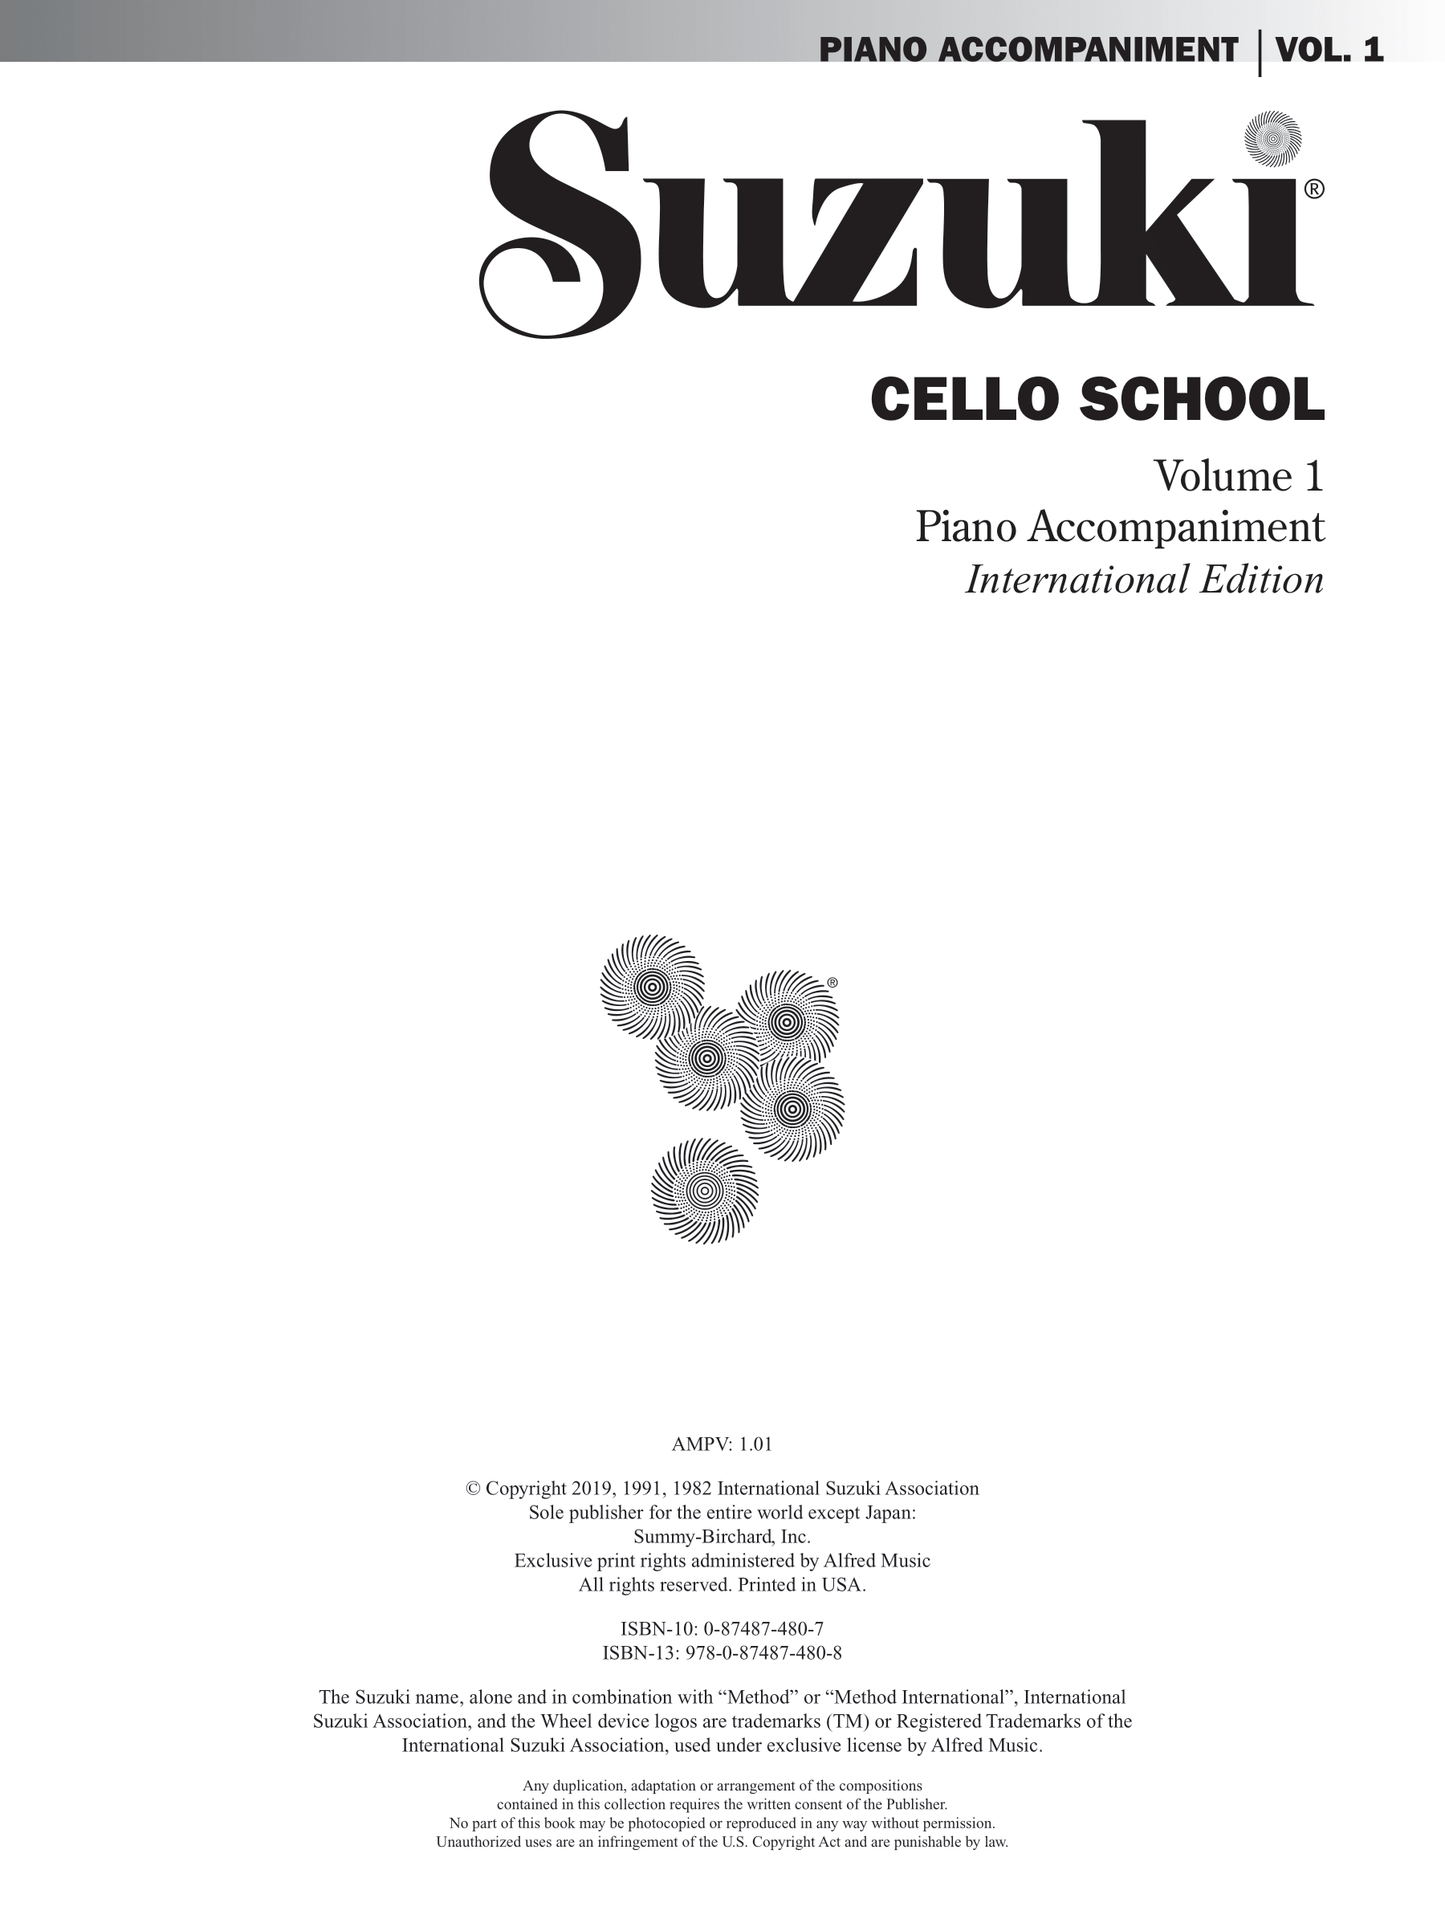 Suzuki Cello School - Volume 1 Piano Accompaniment Book